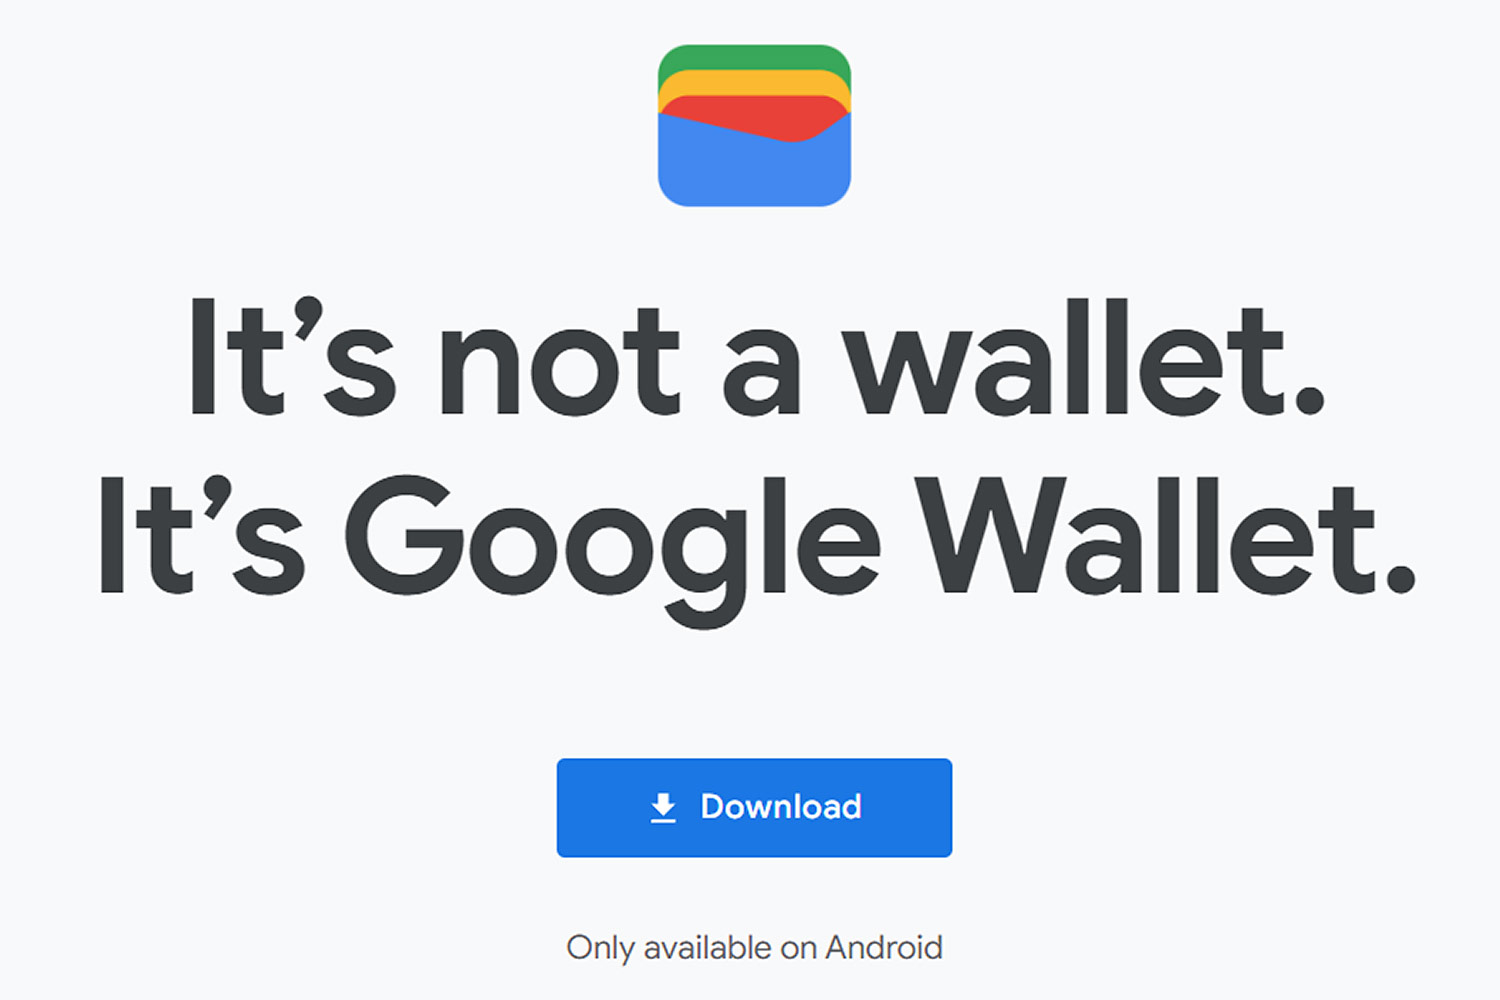 Google Wallet Lands